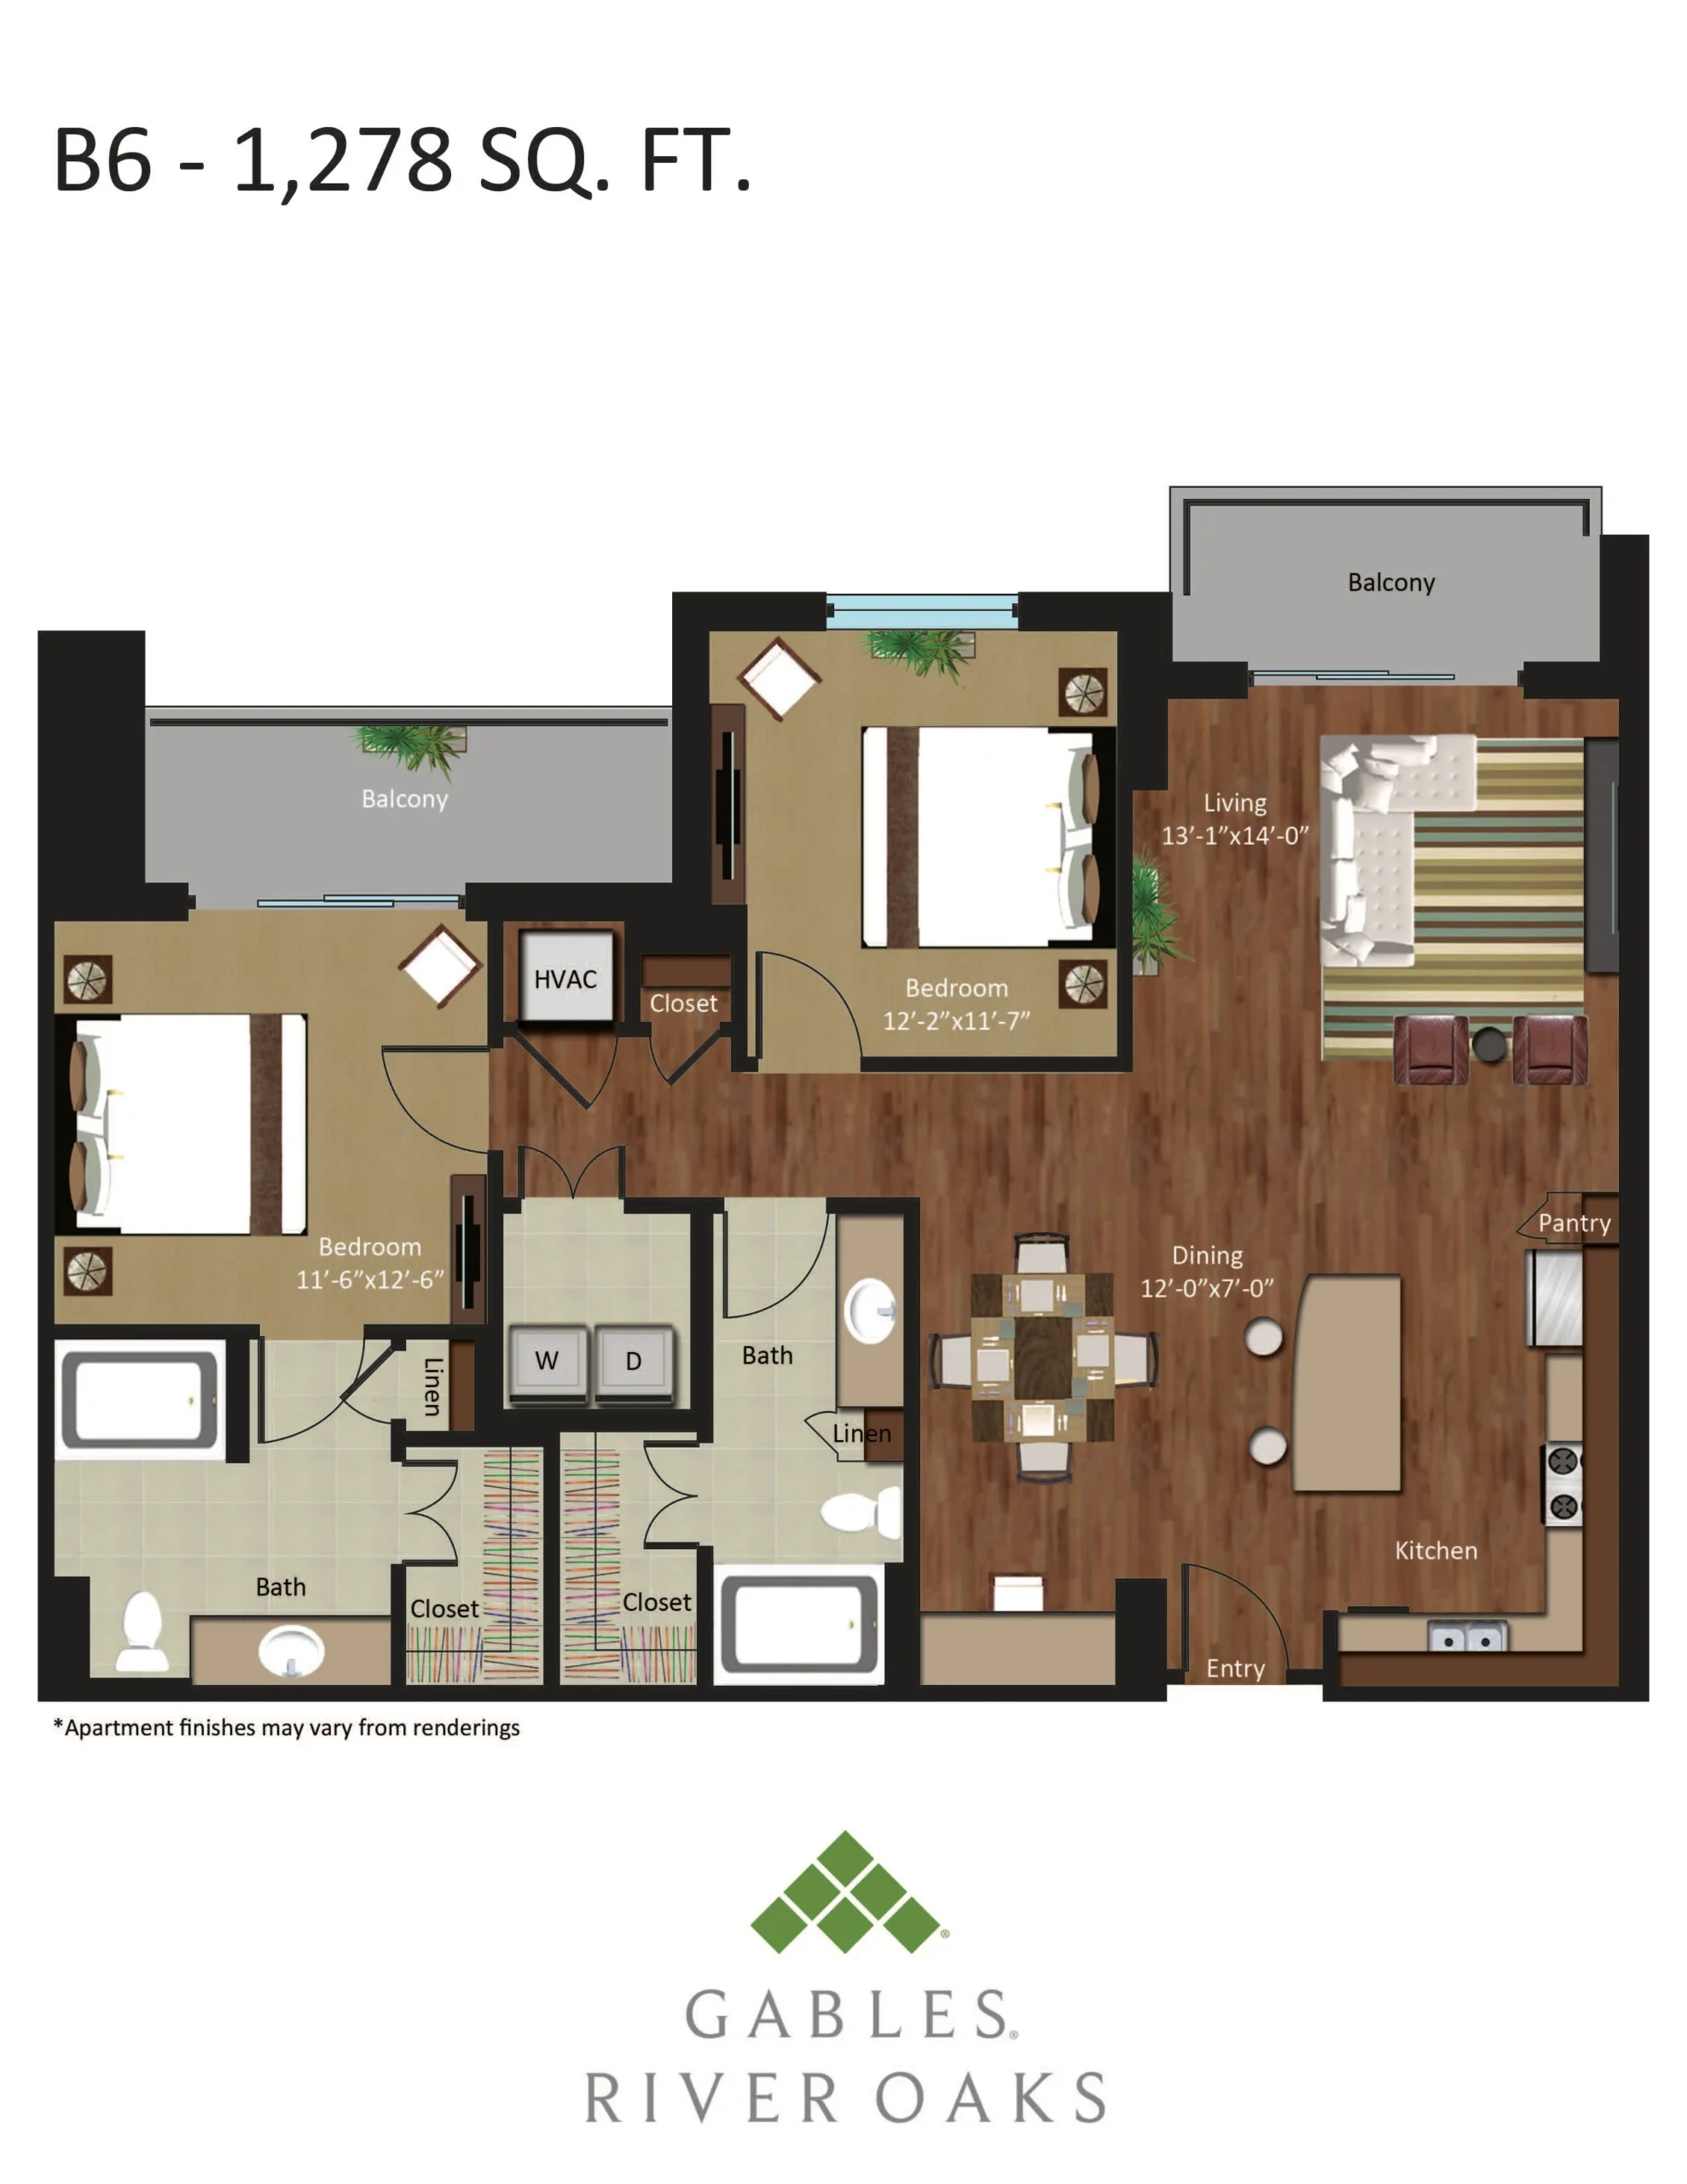 Gables River Oaks Floor Plan 30